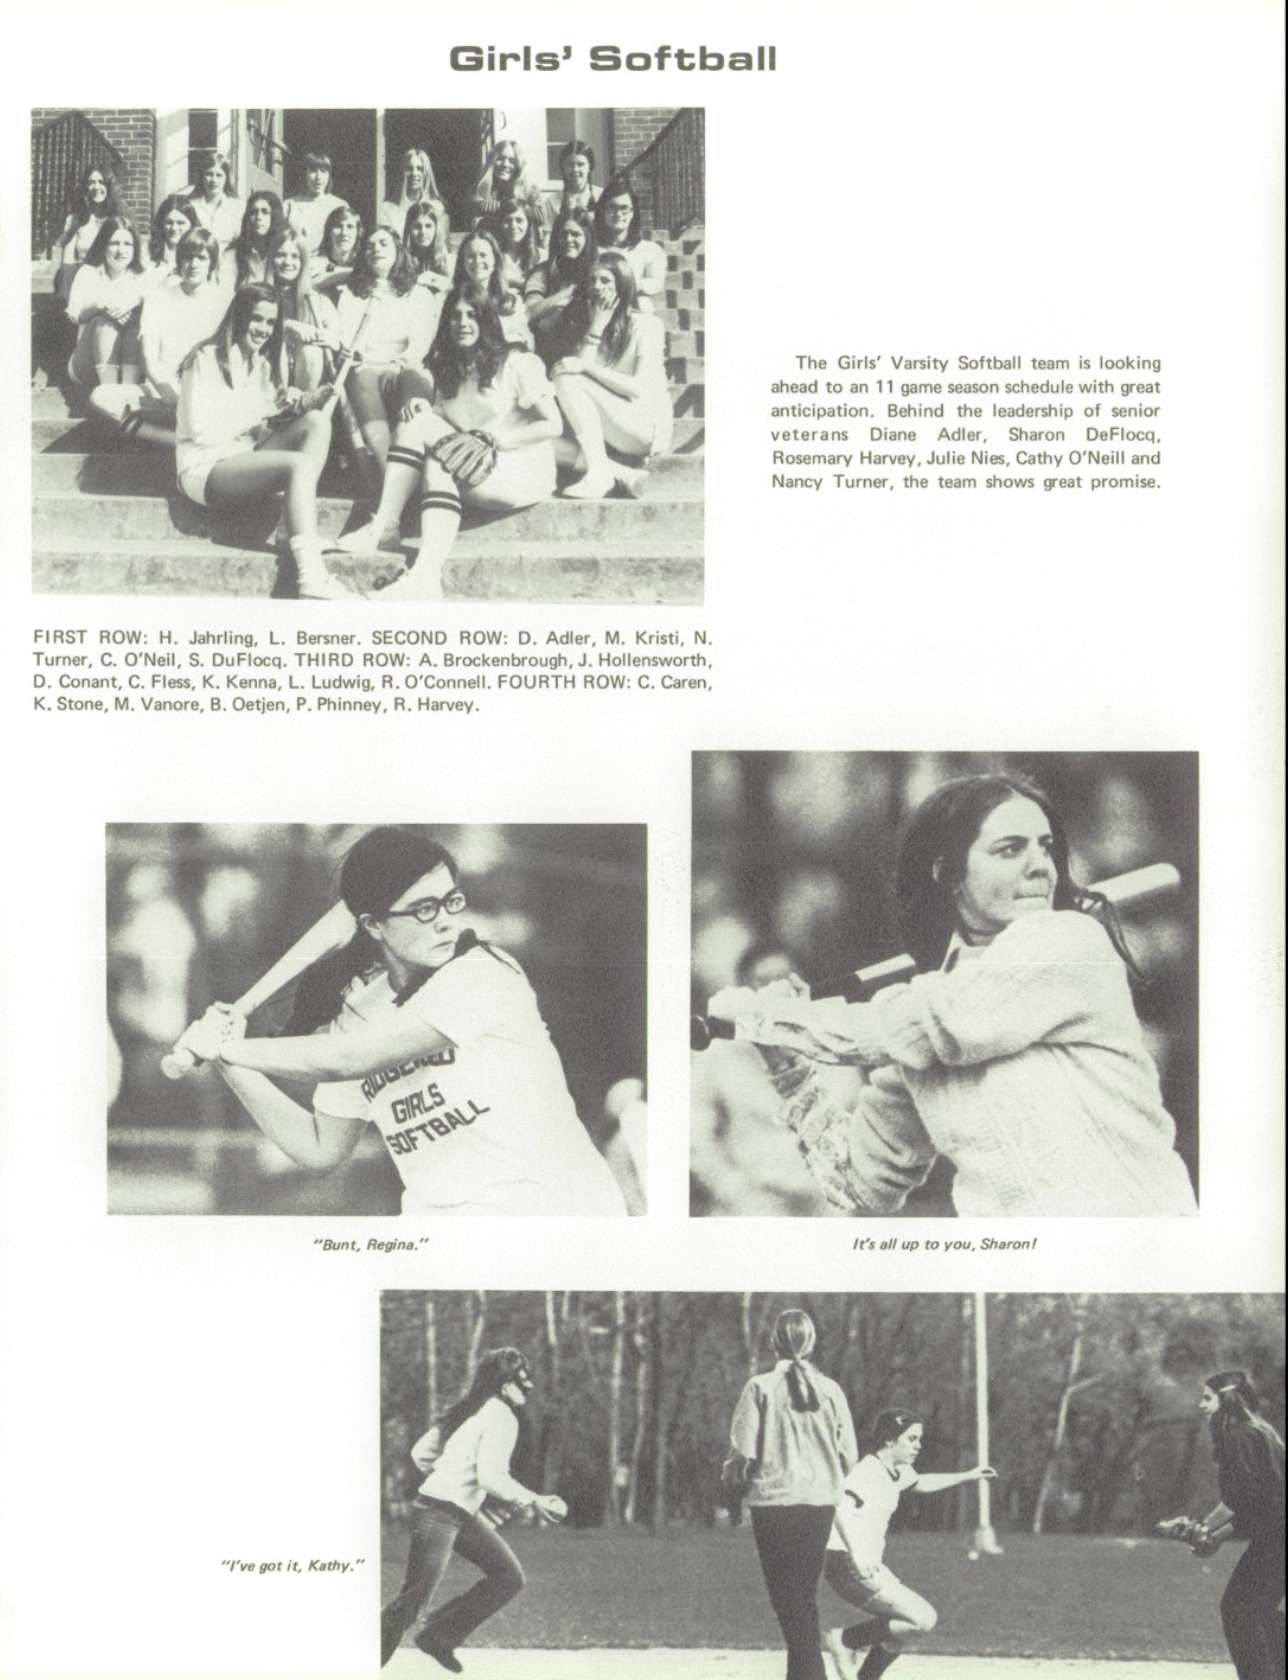 1973 Girls’ Baseball Team